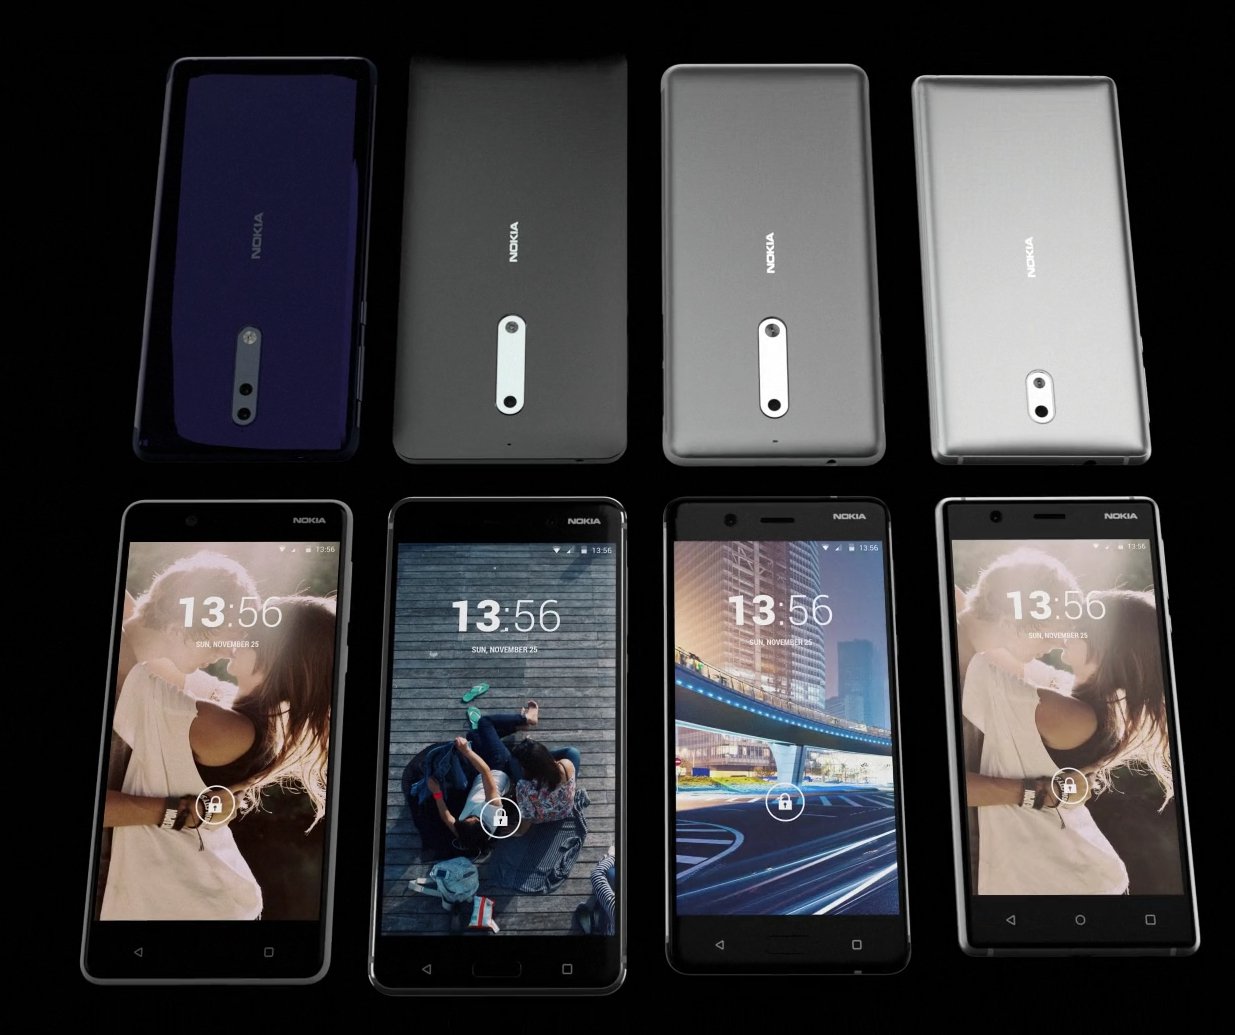 Nokia har annonsert tre telefoner, men dette bildet viser fire.